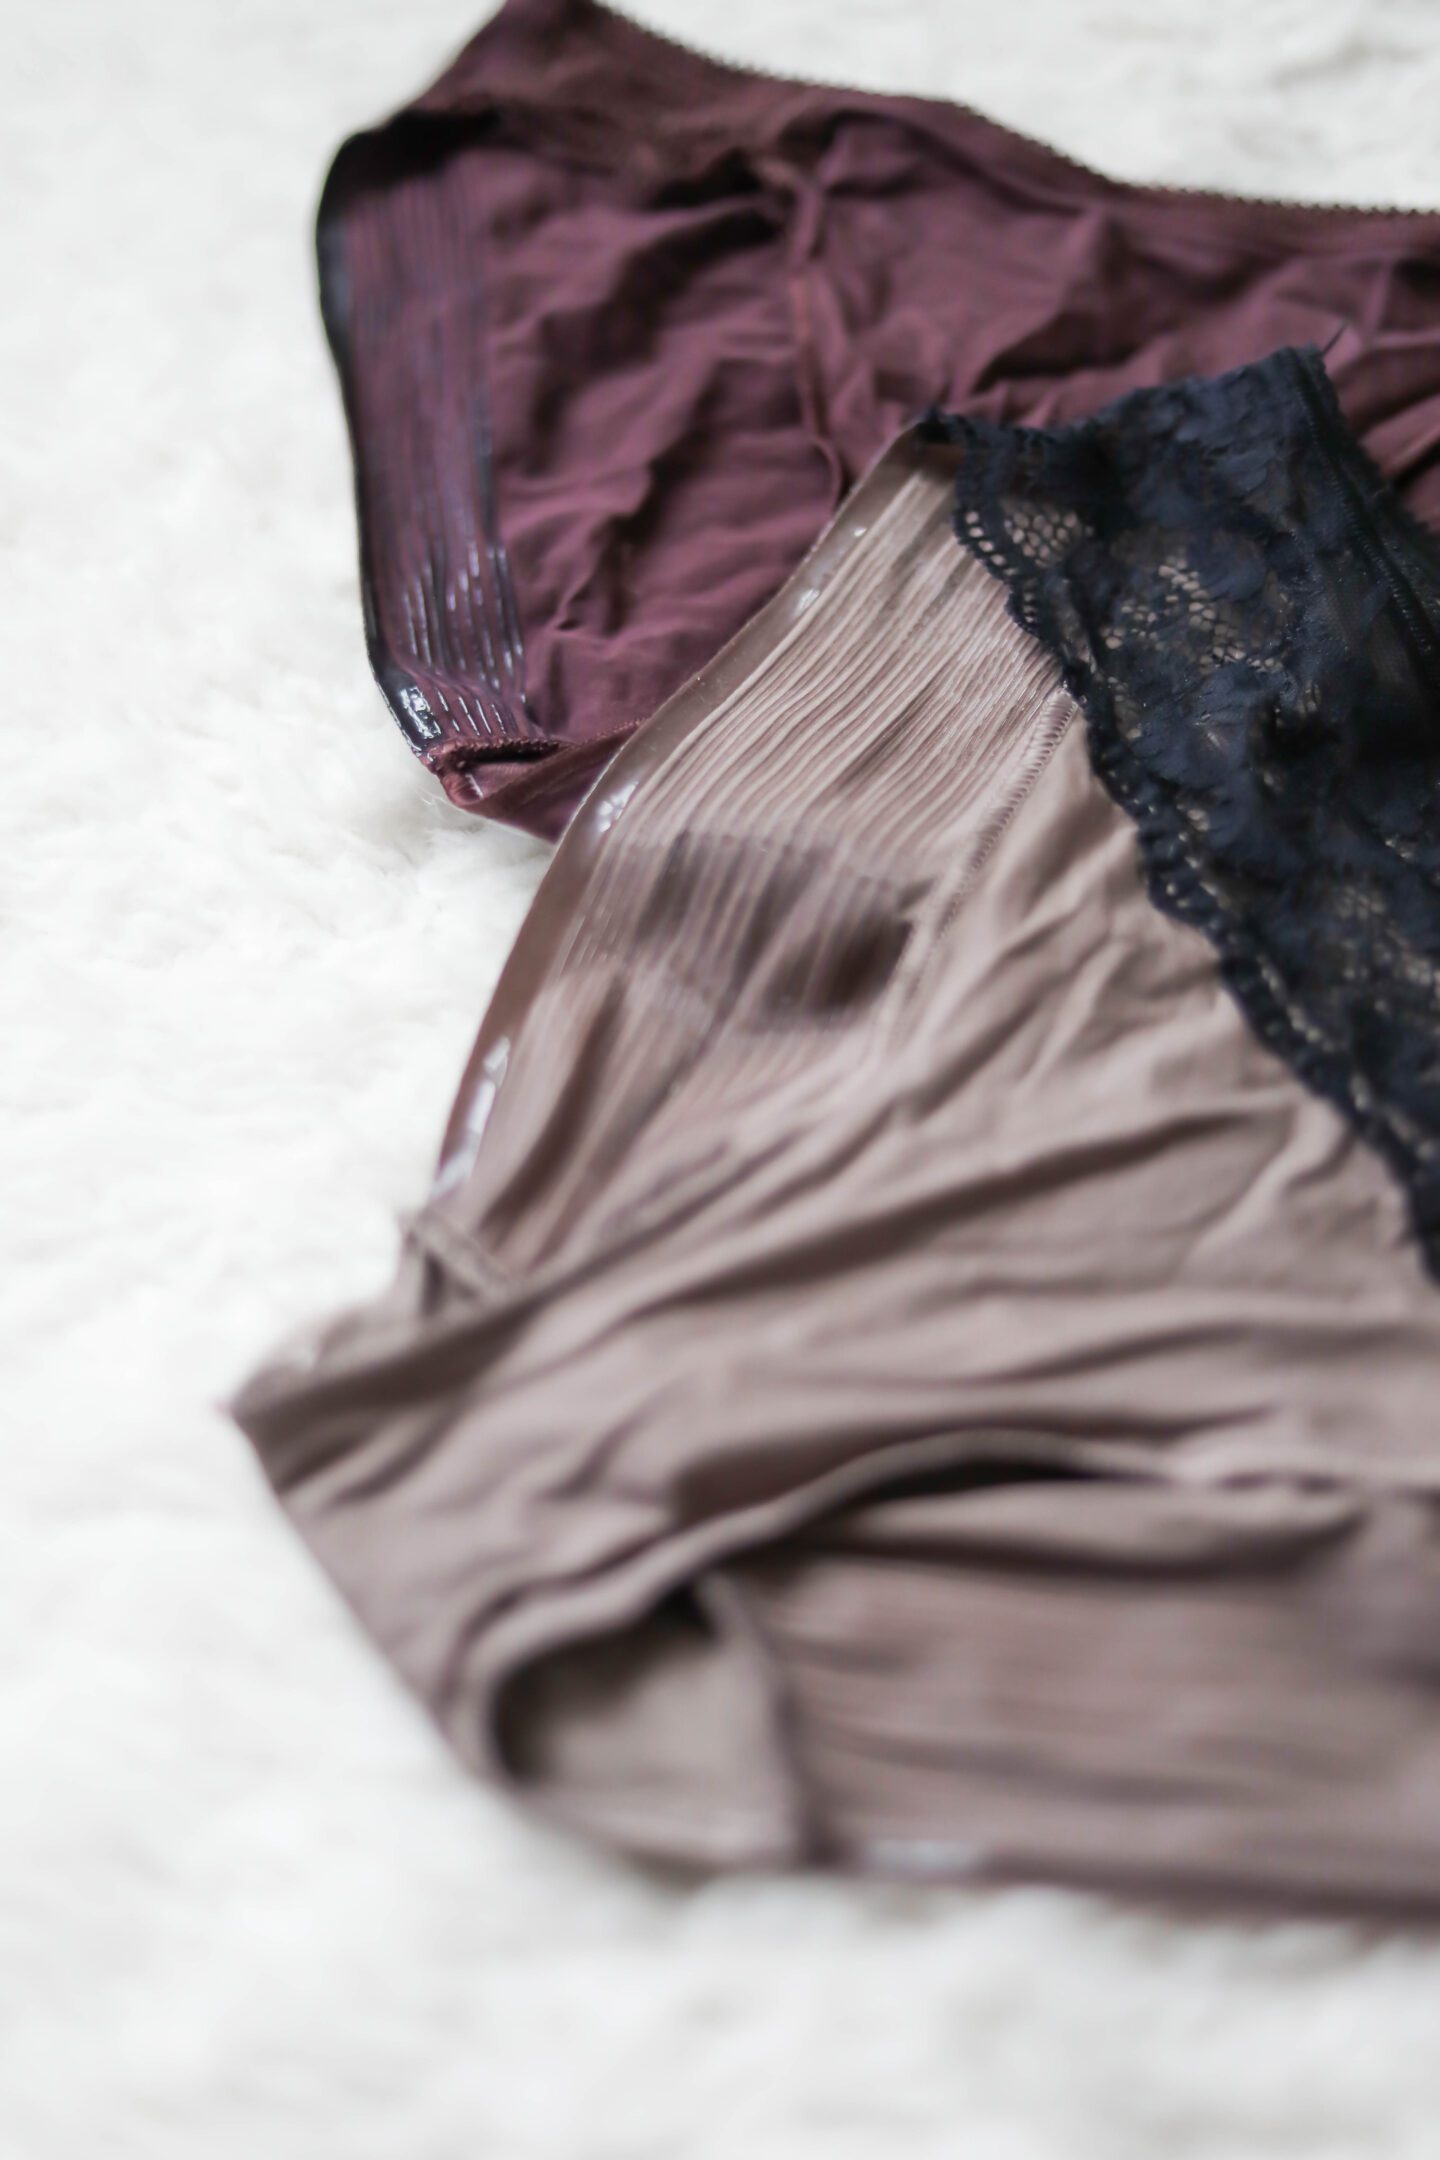 Soma Vanishing Edge Underwear - COOL SH*T I LOVELOVELOVE - Monthly Favorites on Coming Up Roses the blog